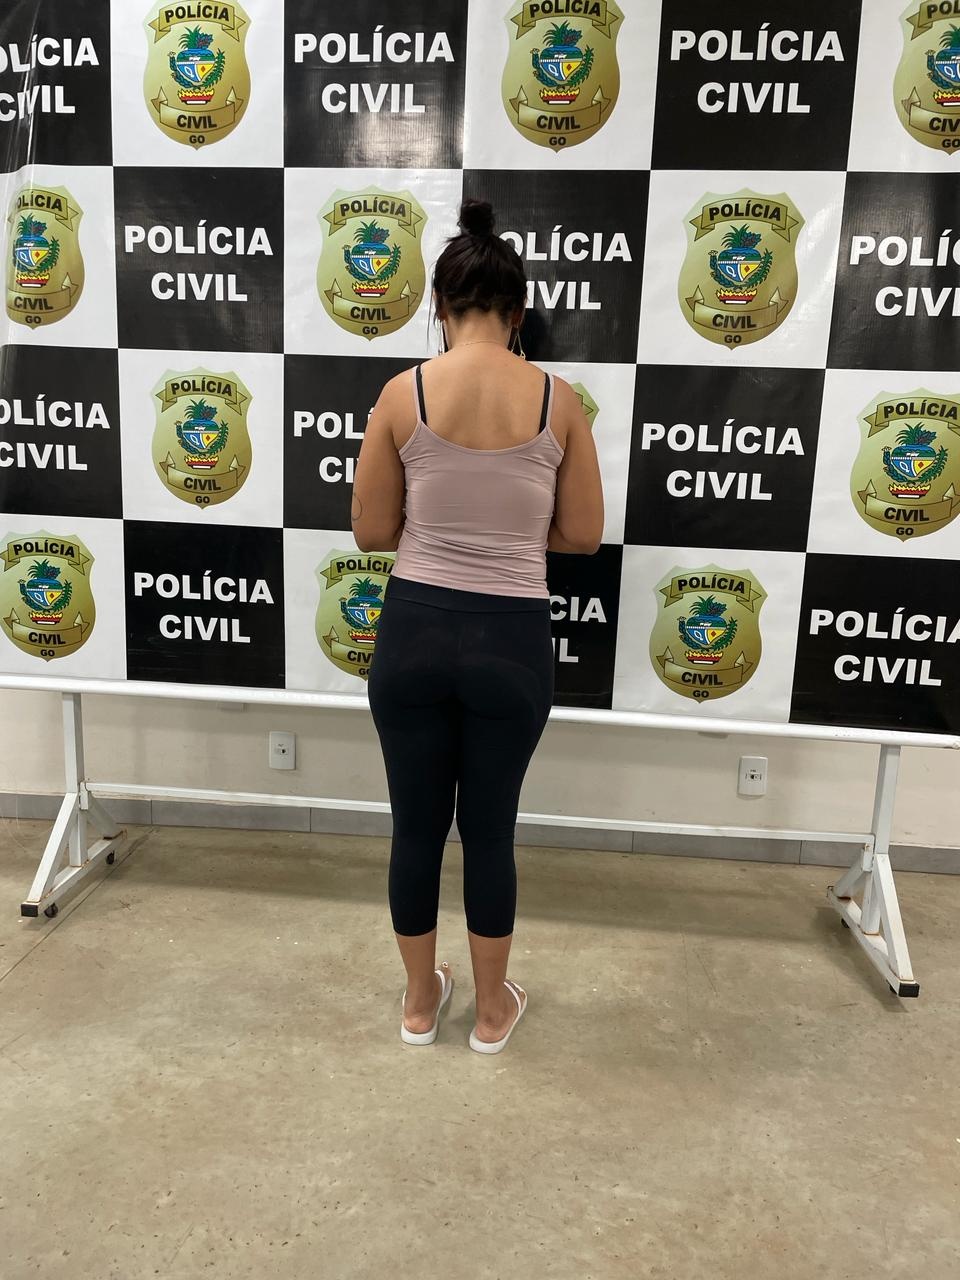 Chefe de organização criminosa do interior do Tocantins é presa em Goiás